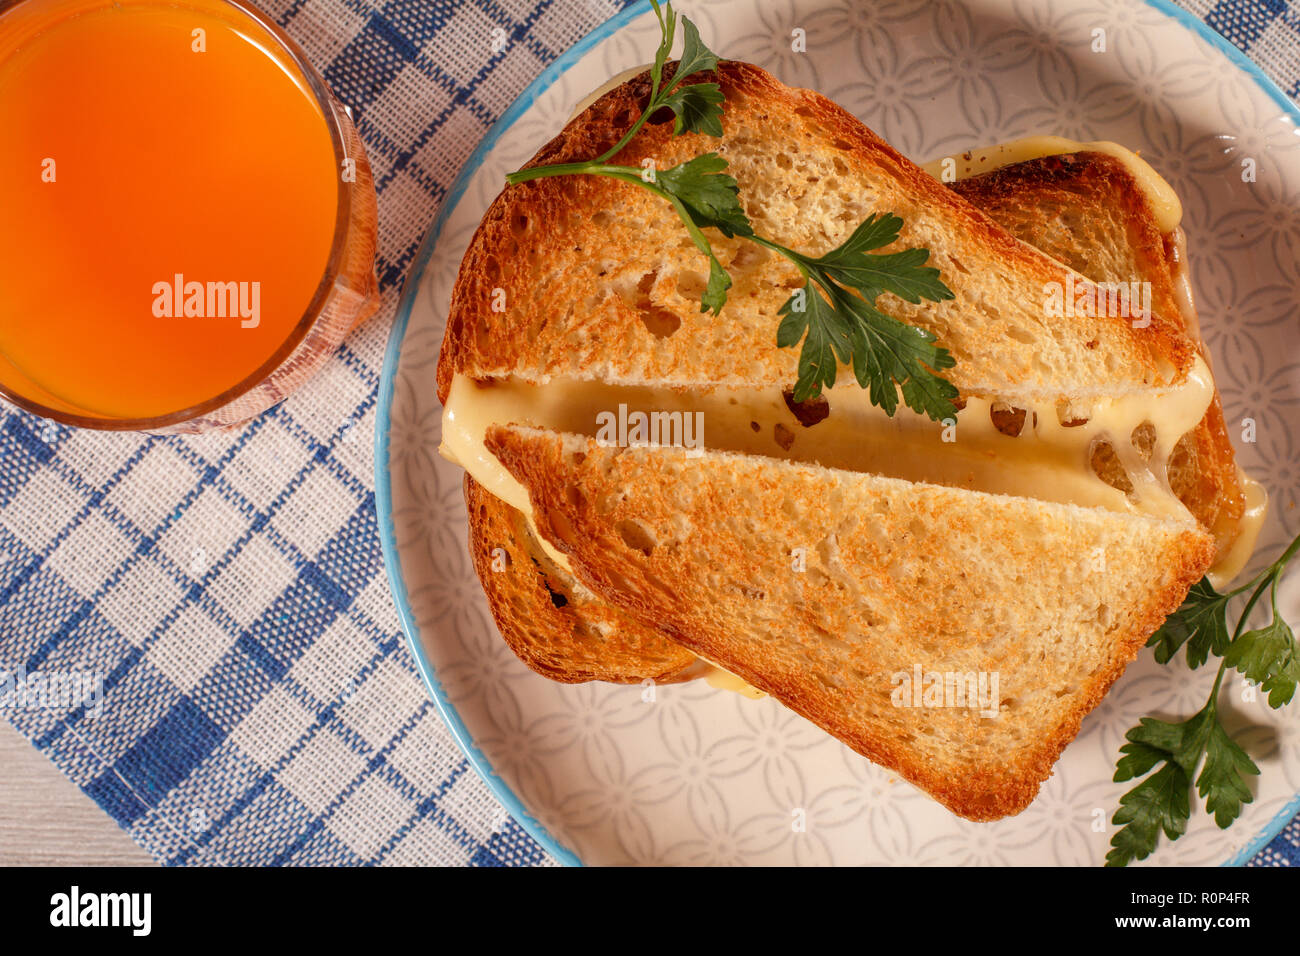 Tranches de pain grillé avec du fromage et persil vert sur plaque blanche, verre de jus d'orange avec une serviette de cuisine bleu. De la bonne nourriture pour le petit déjeuner. Haut de la vie Banque D'Images